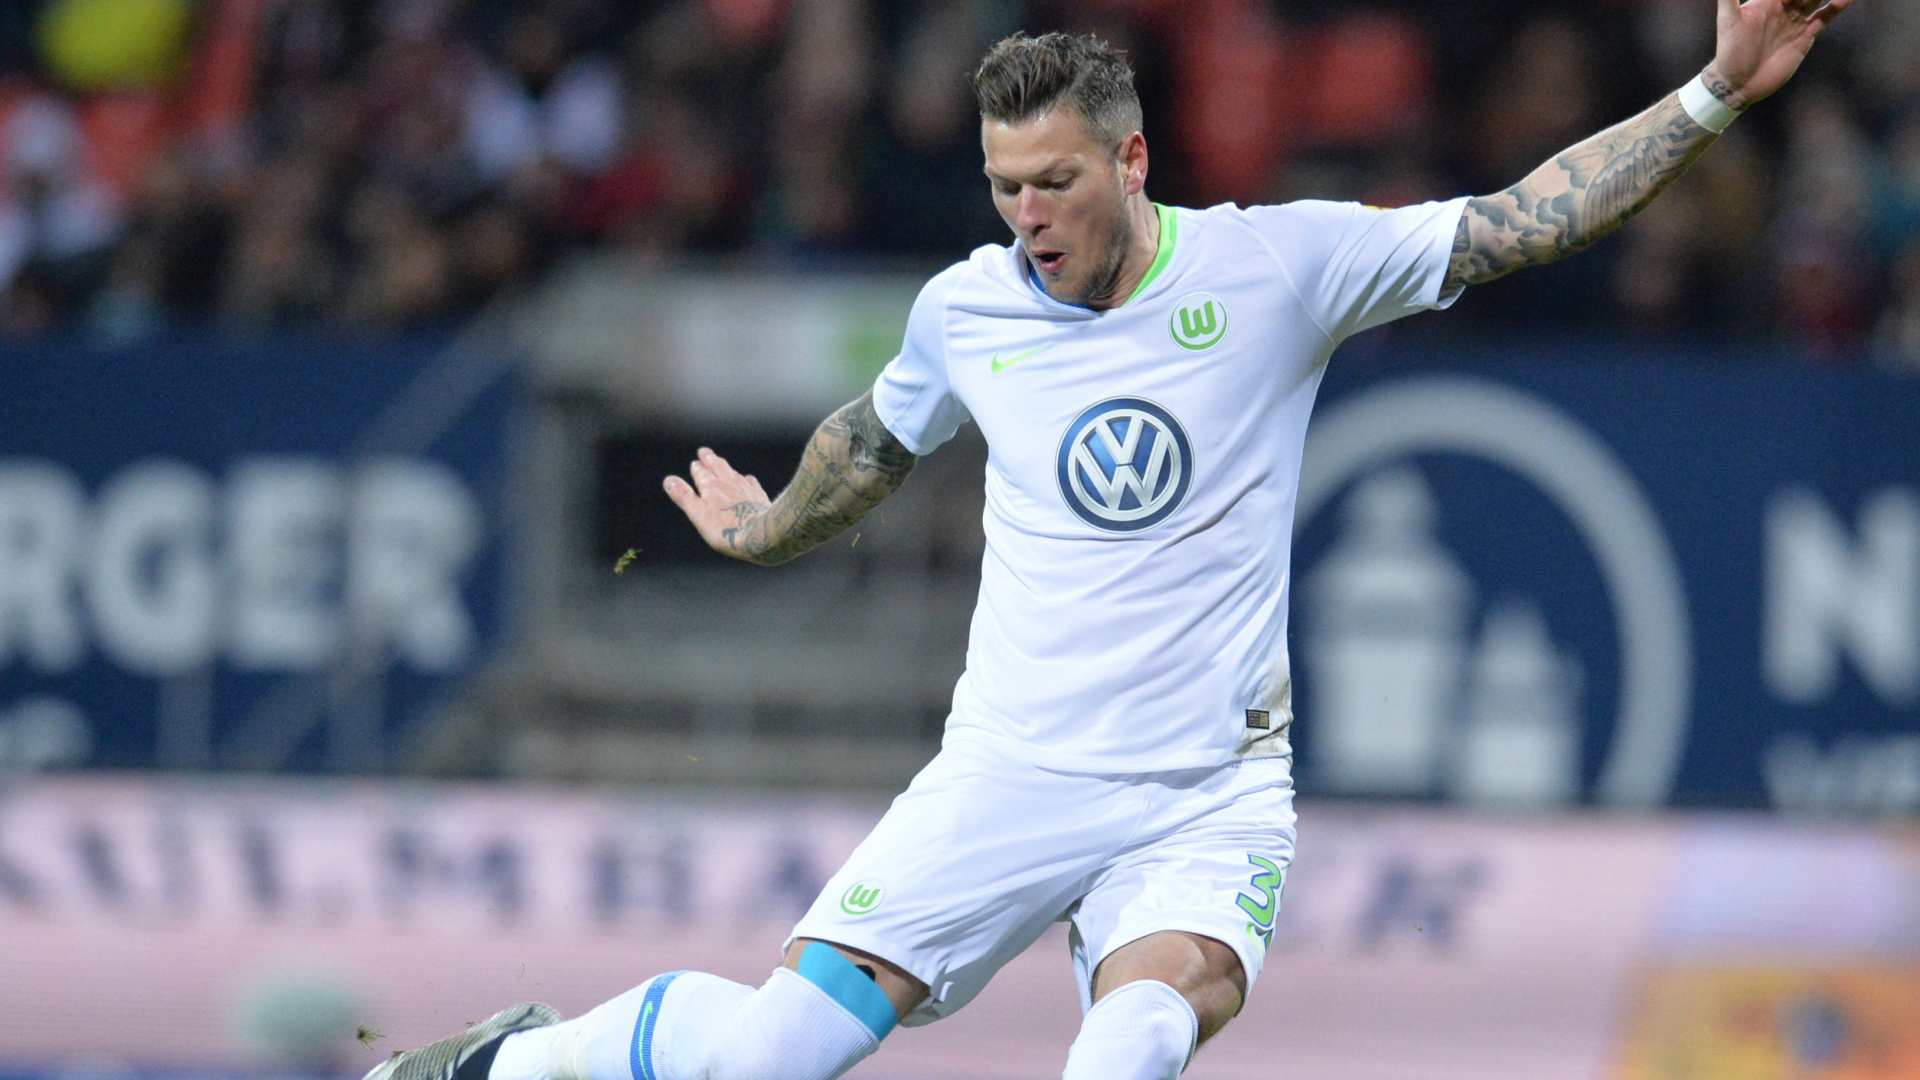 Der Wolfsburger Daniel Ginczek schießt das Tor zum 0:1. | Bildquelle: dpa